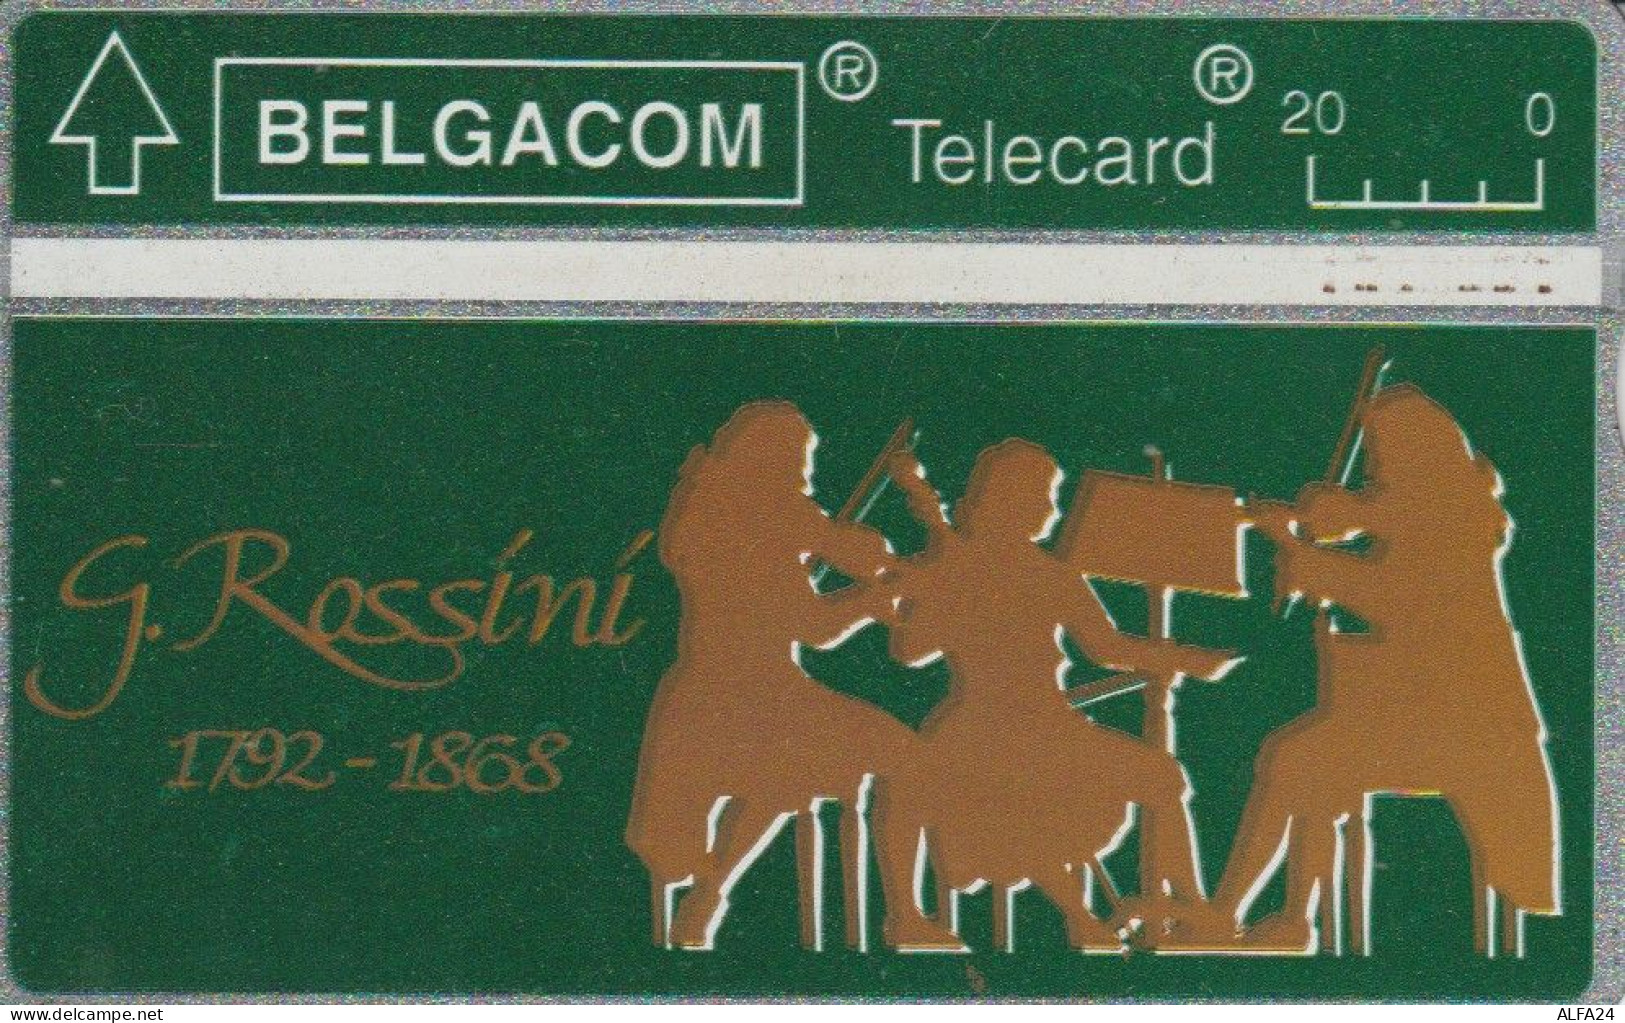 PHONE CARD BELGIO LANDIS (CK6009 - Sans Puce